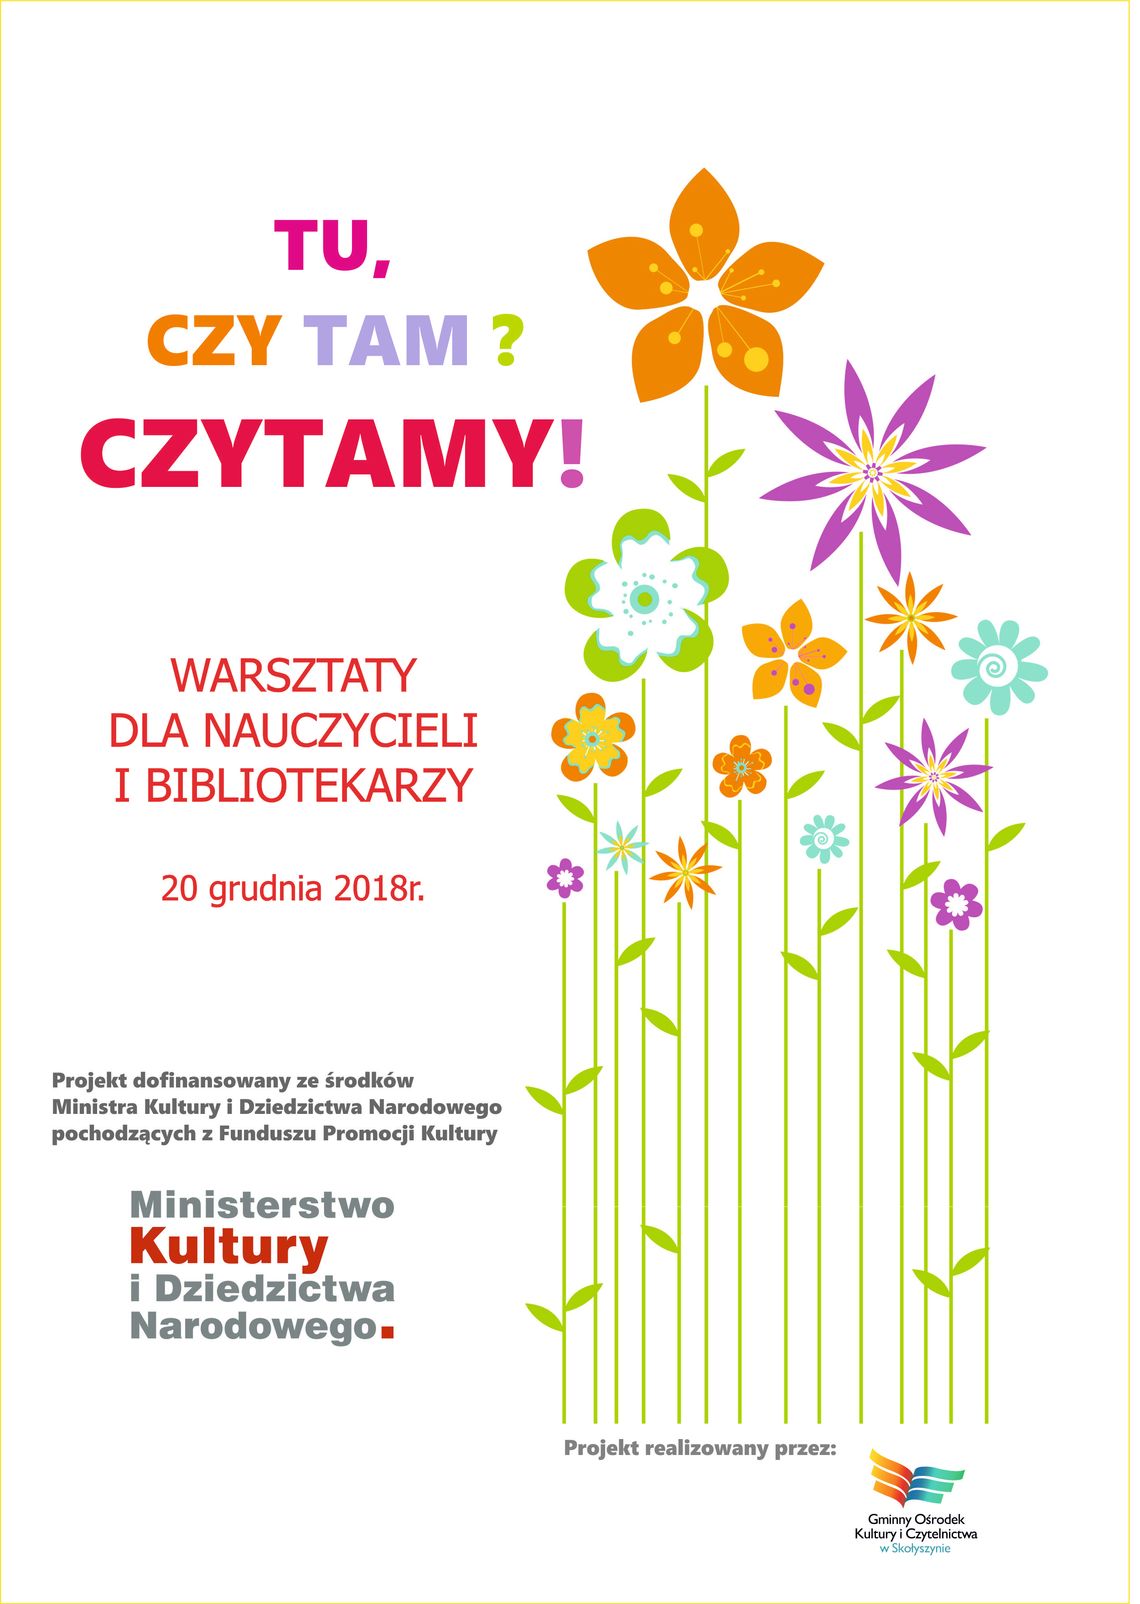 Bezpłatne warsztaty dla nauczycieli i bibliotekarzy w GOKiCz w Skołyszynie